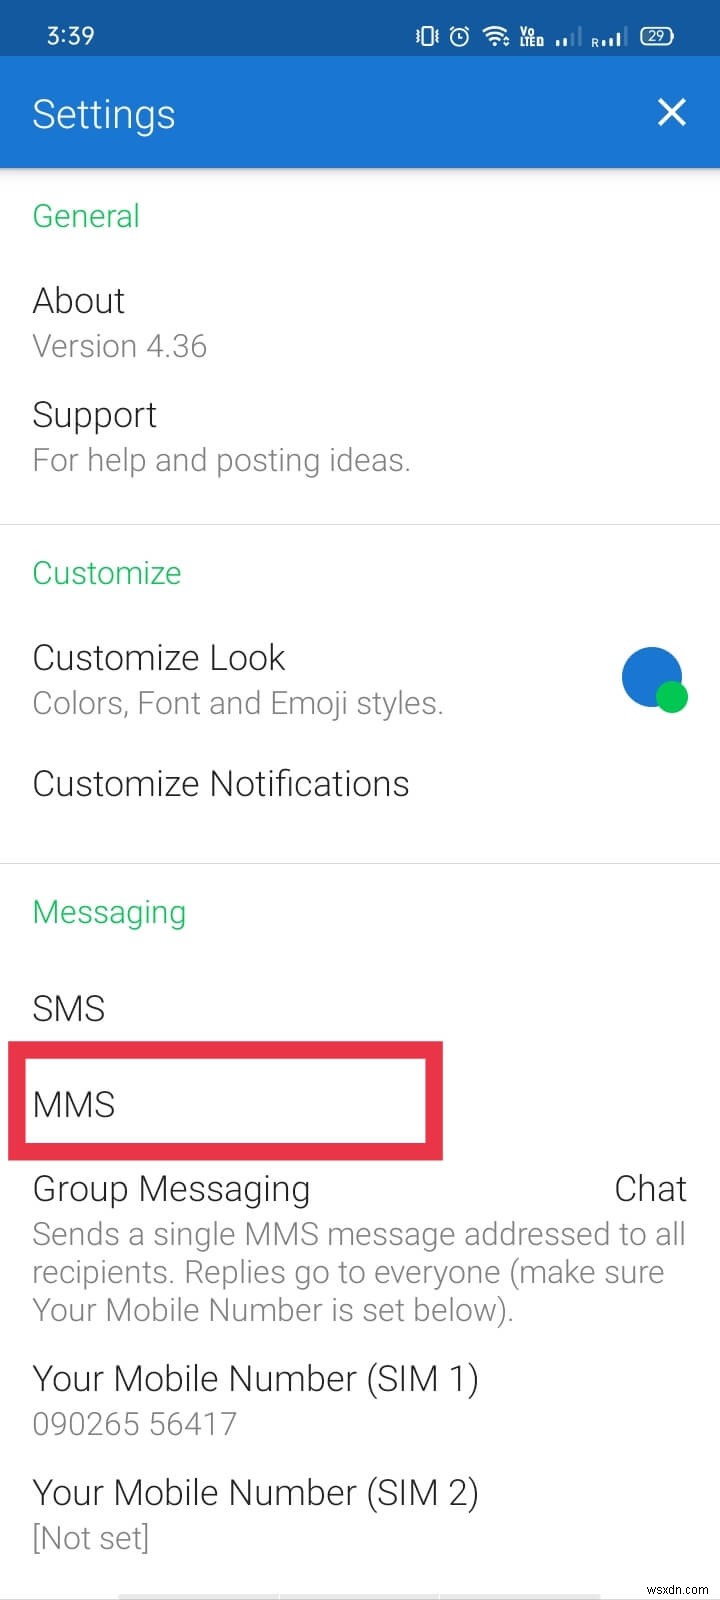 वाईफाई पर एमएमएस भेजने और प्राप्त करने के 3 तरीके